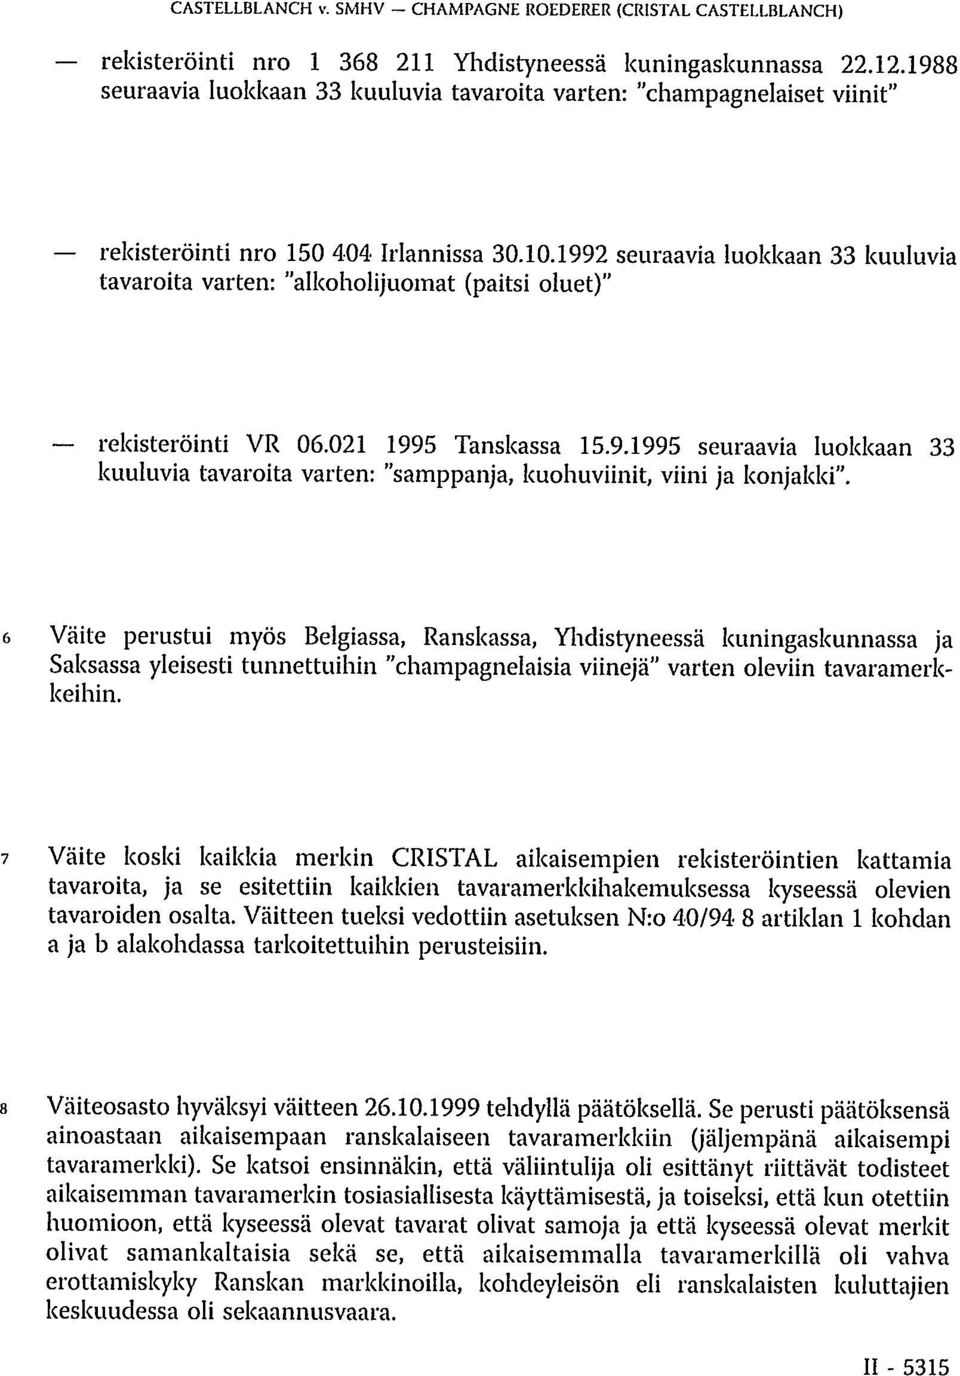 1992 seuraavia luokkaan 33 kuuluvia tavaroita varten: "alkoholijuomat (paitsi oluet)" rekisteröinti VR 06.021 1995 Tanskassa 15.9.1995 seuraavia luokkaan 33 kuuluvia tavaroita varten: "samppanja, kuohuviinit, viini ja konjakki".